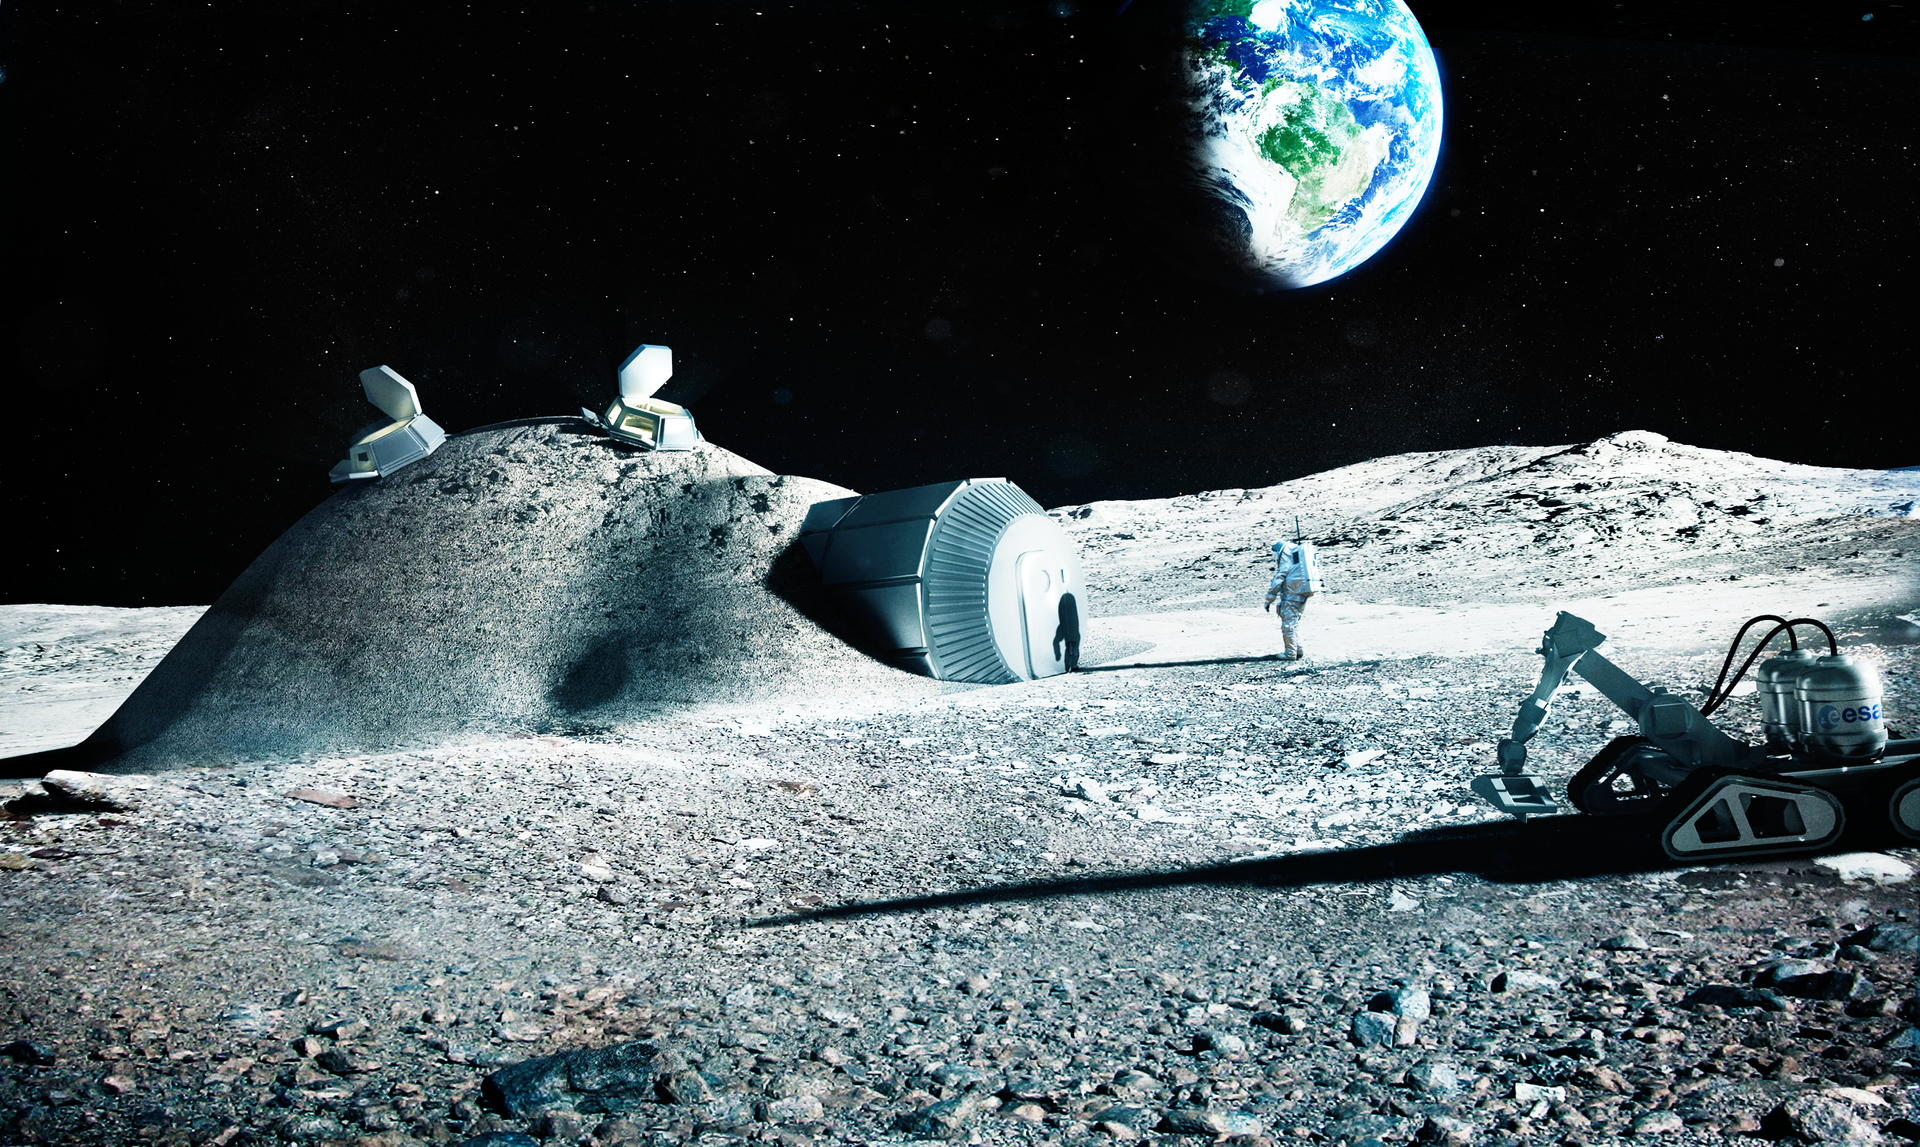 Bước đầu tiên hướng tới việc thiết lập căn cứ trên Mặt trăng là tạo ra các yếu tố cơ sở hạ tầng, chẳng hạn như đường sá, bãi đáp dành cho xe tự hành, tàu vũ trụ, tên lửa. (Ảnh: Google)